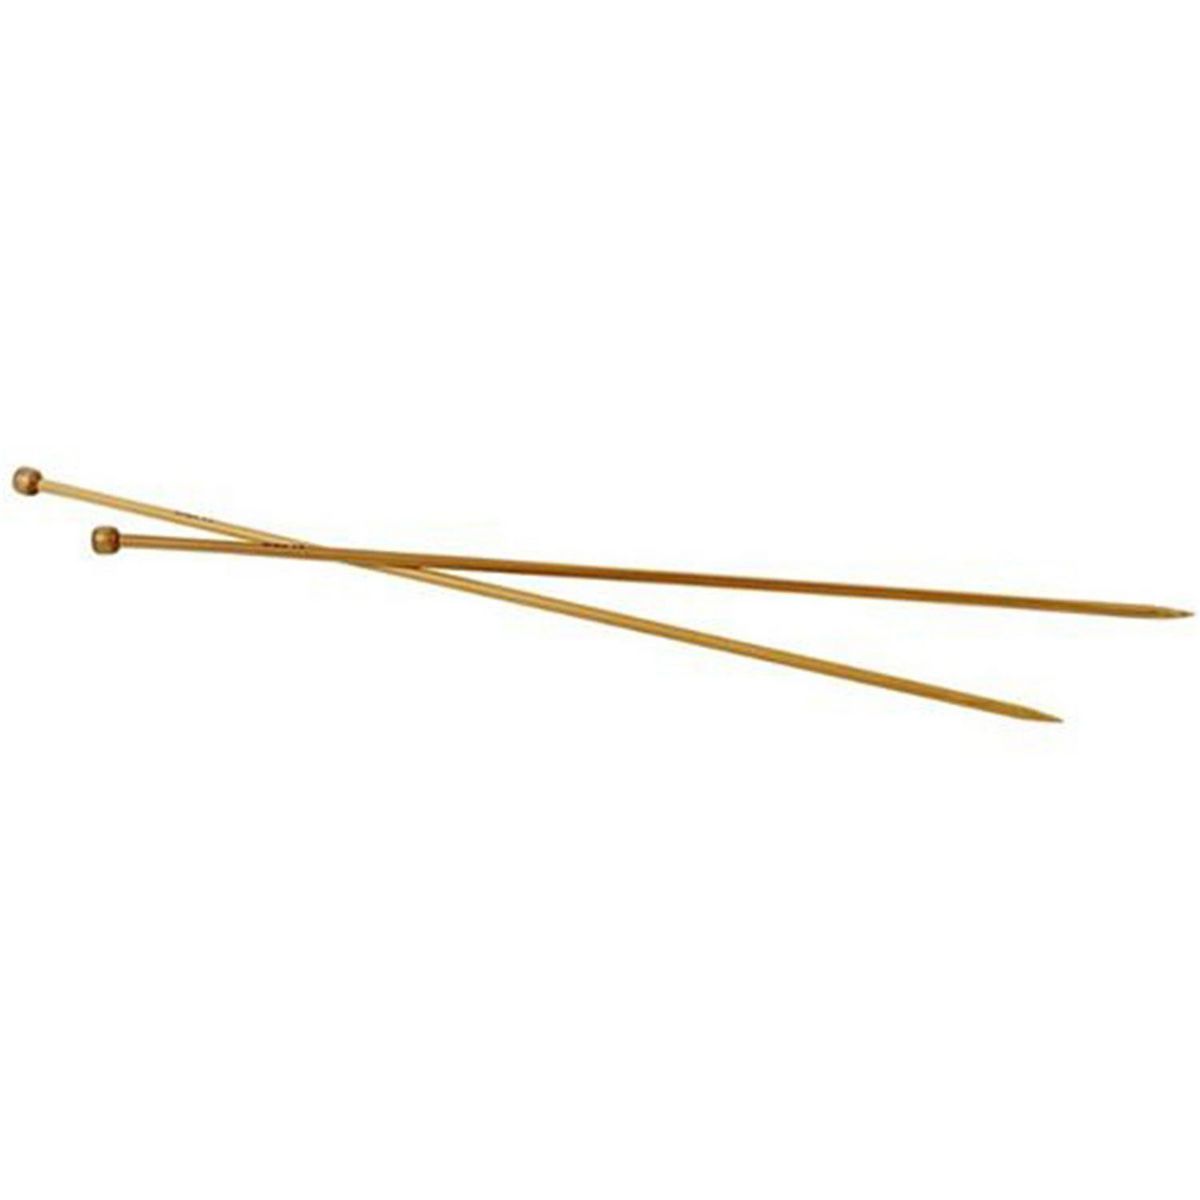  2 Aiguilles À Tricoter En Bambou 35 cm - Ø 4,5 mm